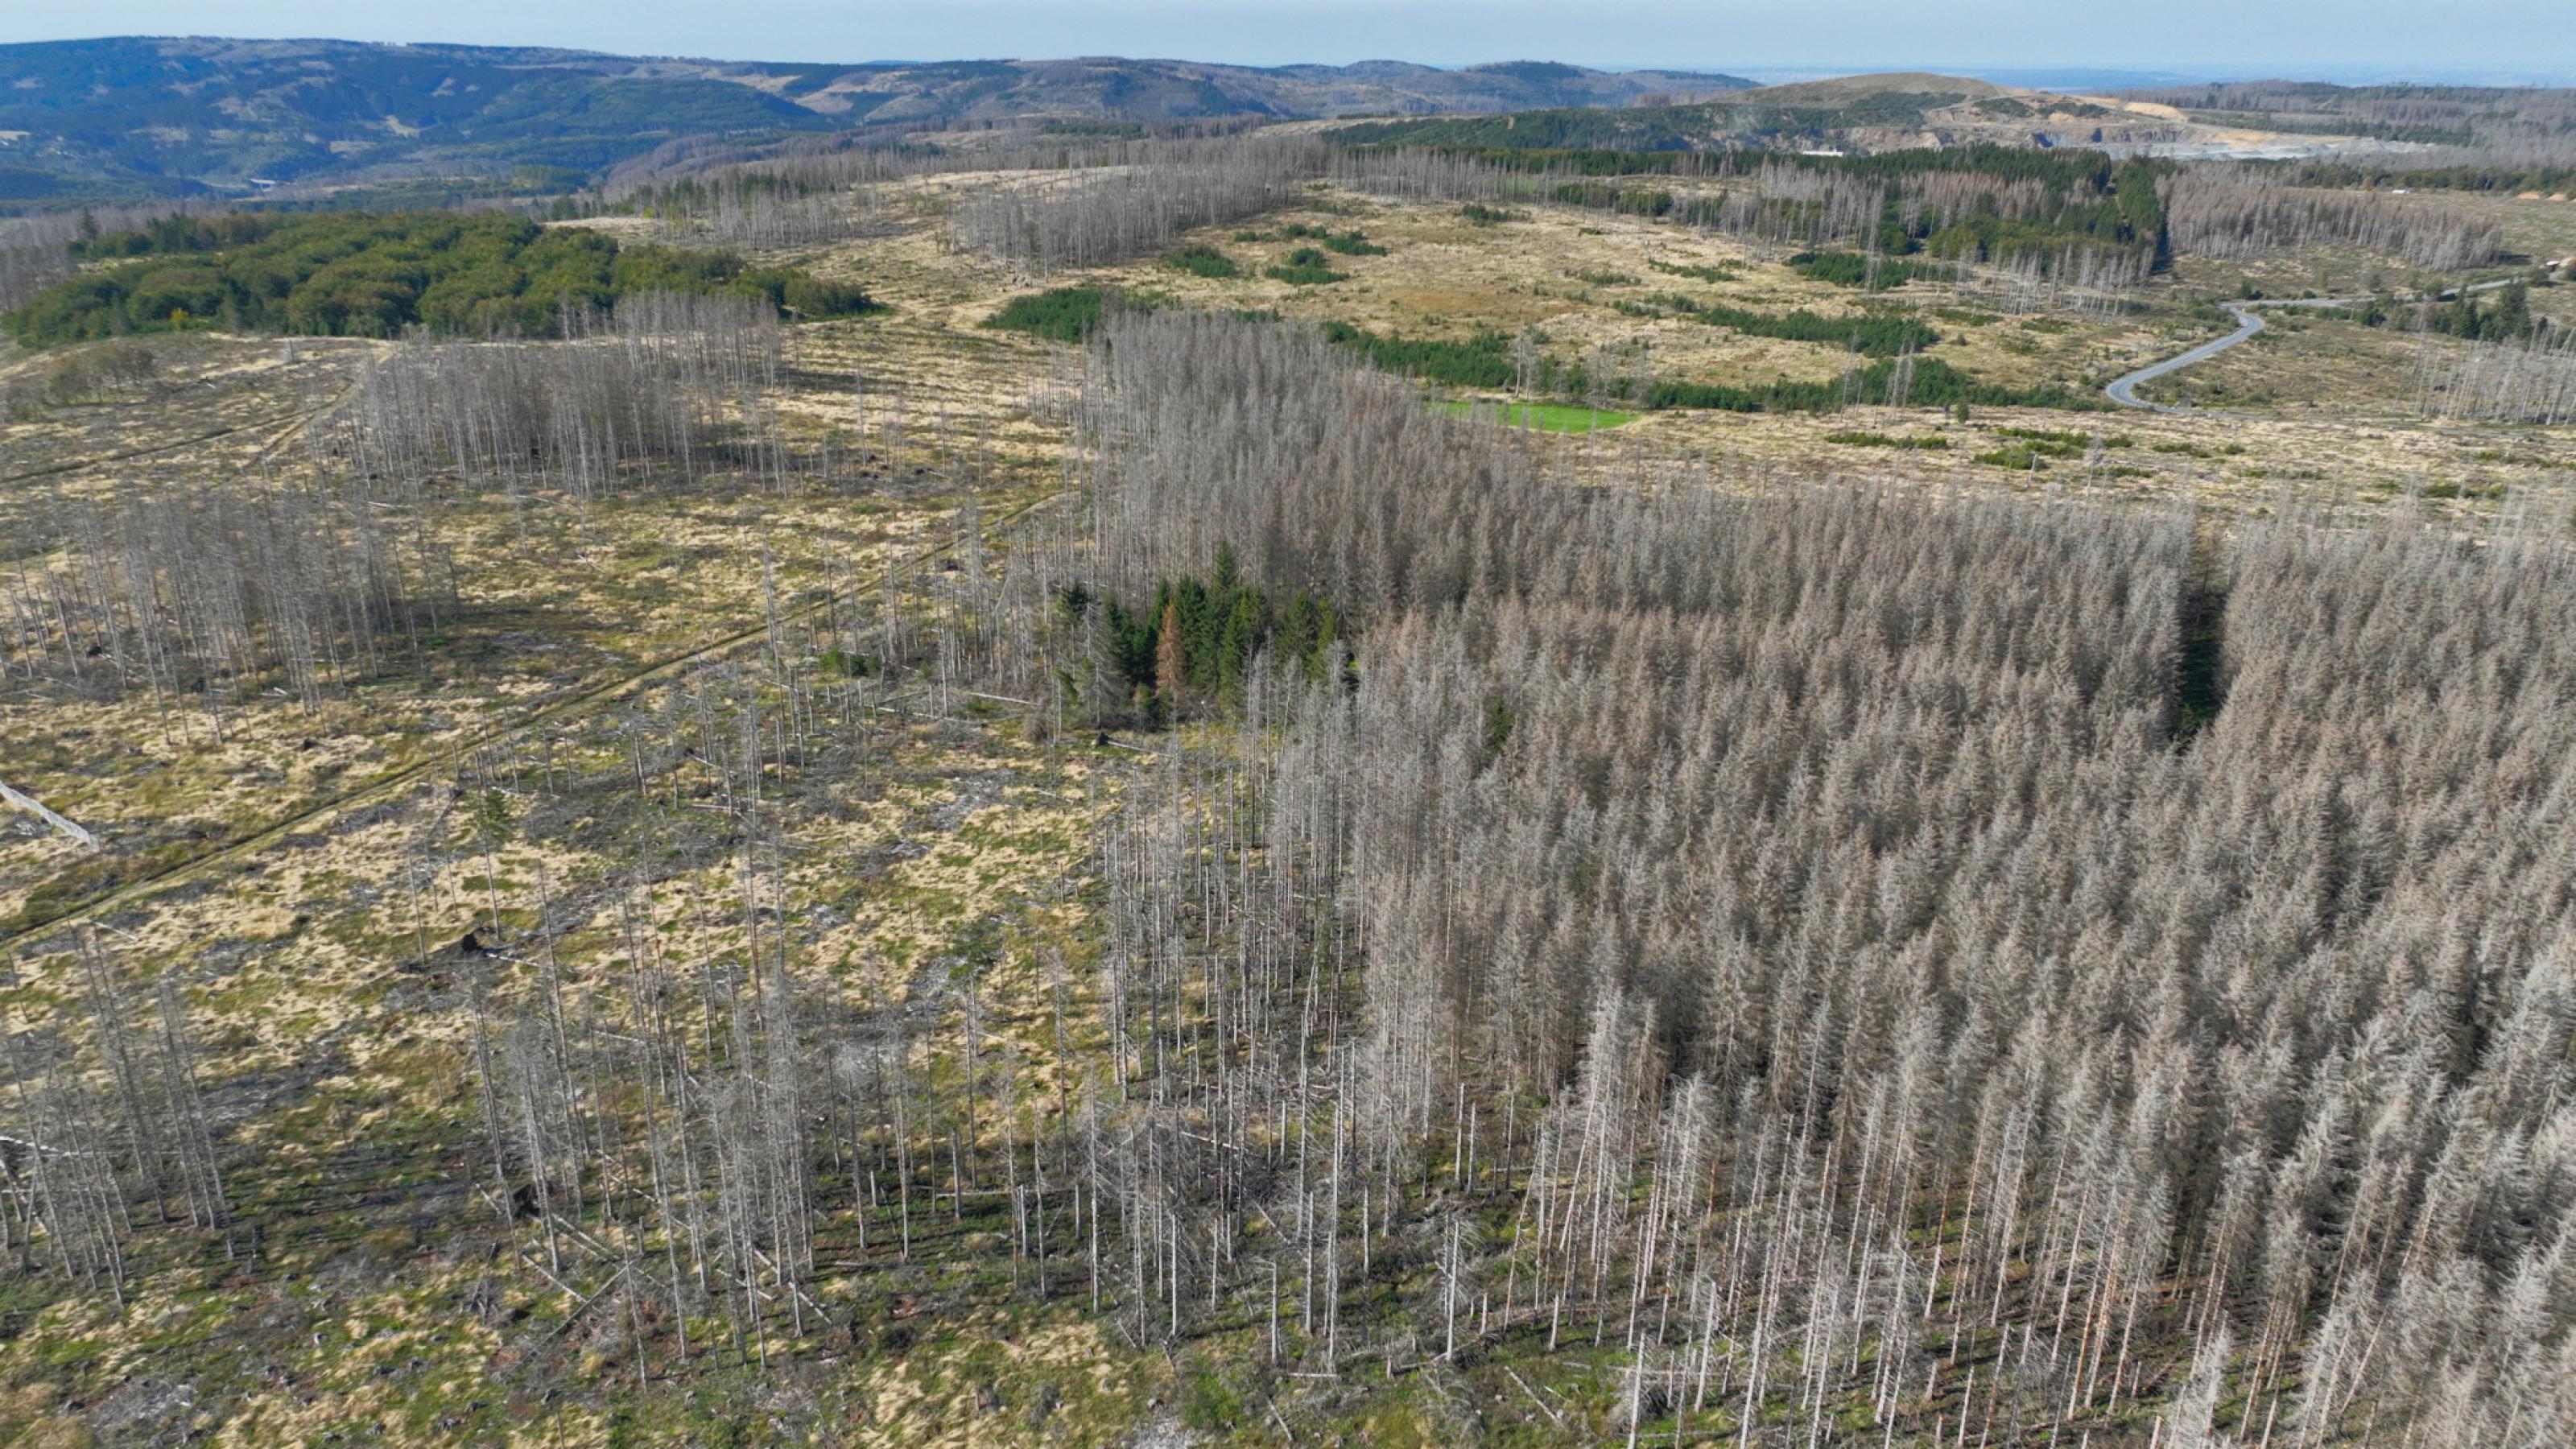 Luftbild einer Landschaft voller toter Bäume.